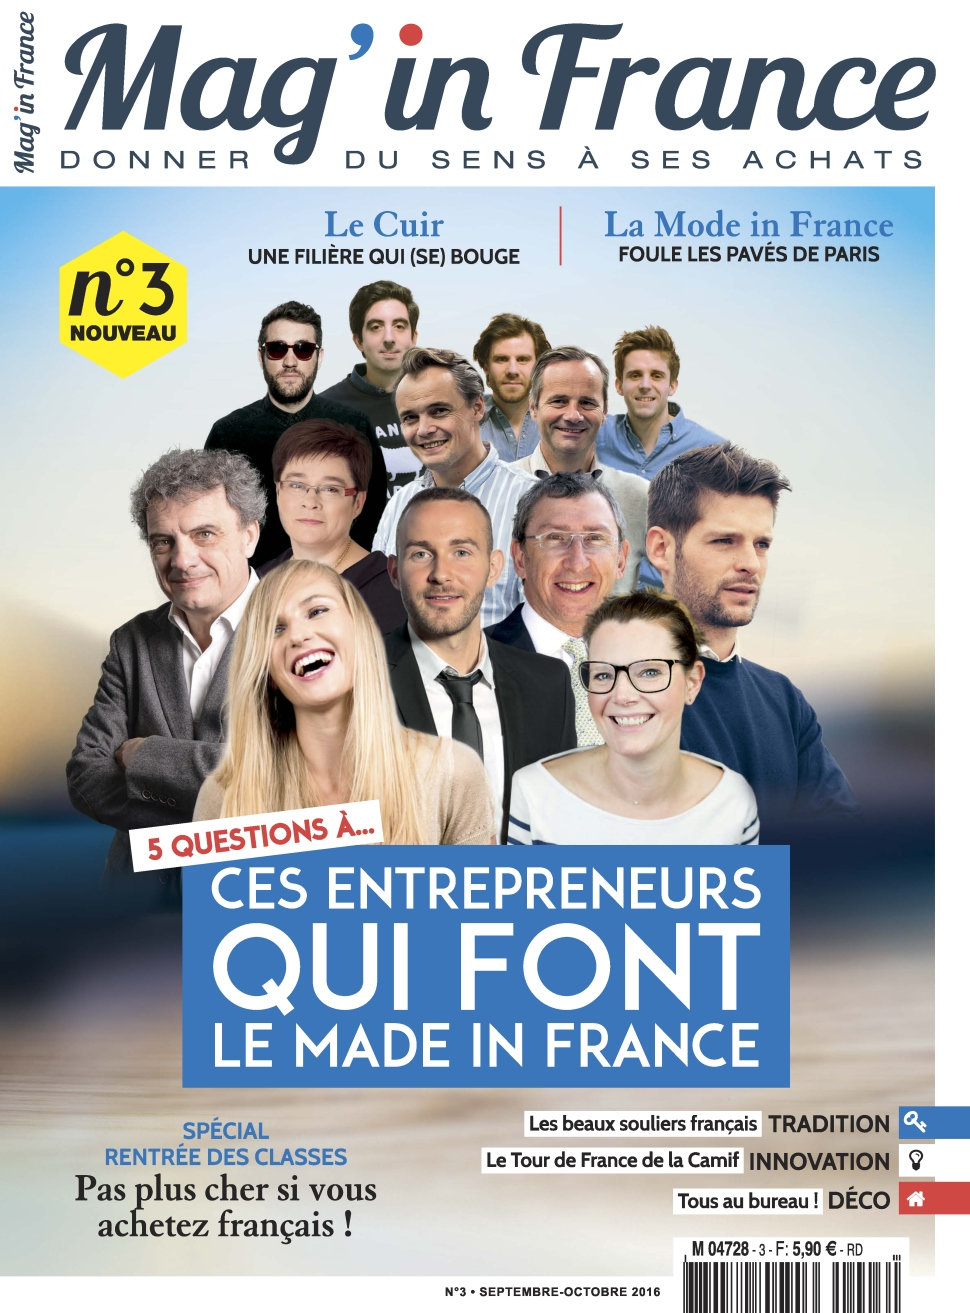 Mag in France N°3 - Septembre/Octobre 2016 